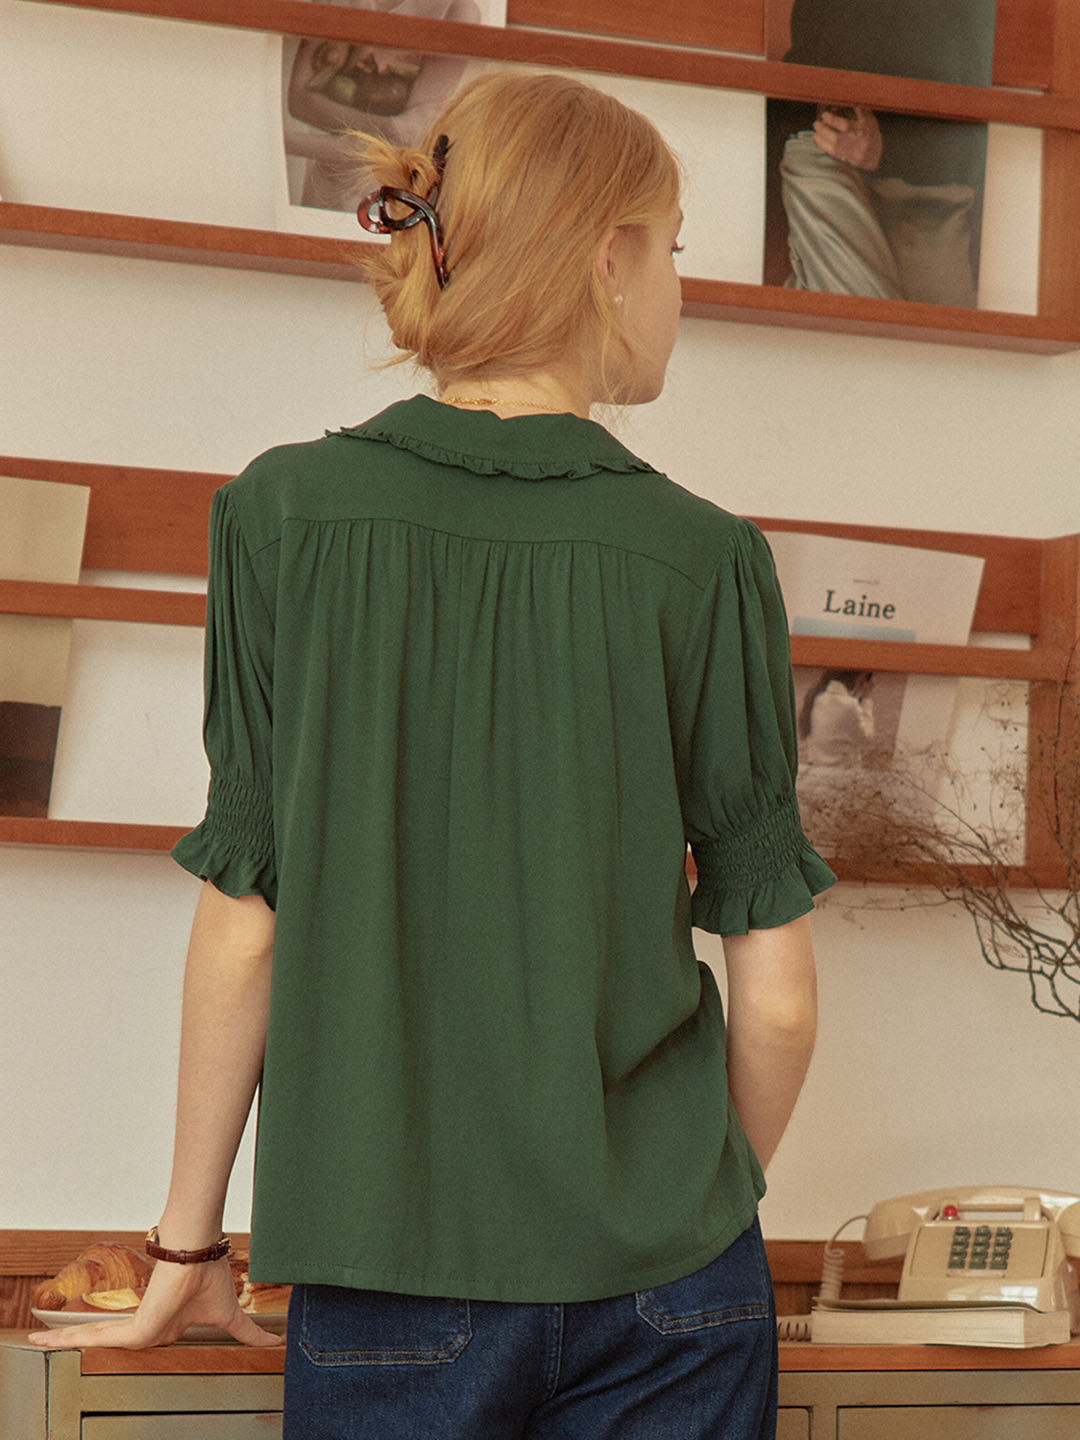 Convallaria 墨綠色鈴蘭刺綉泡泡袖襯衫/SIMPLERETRO